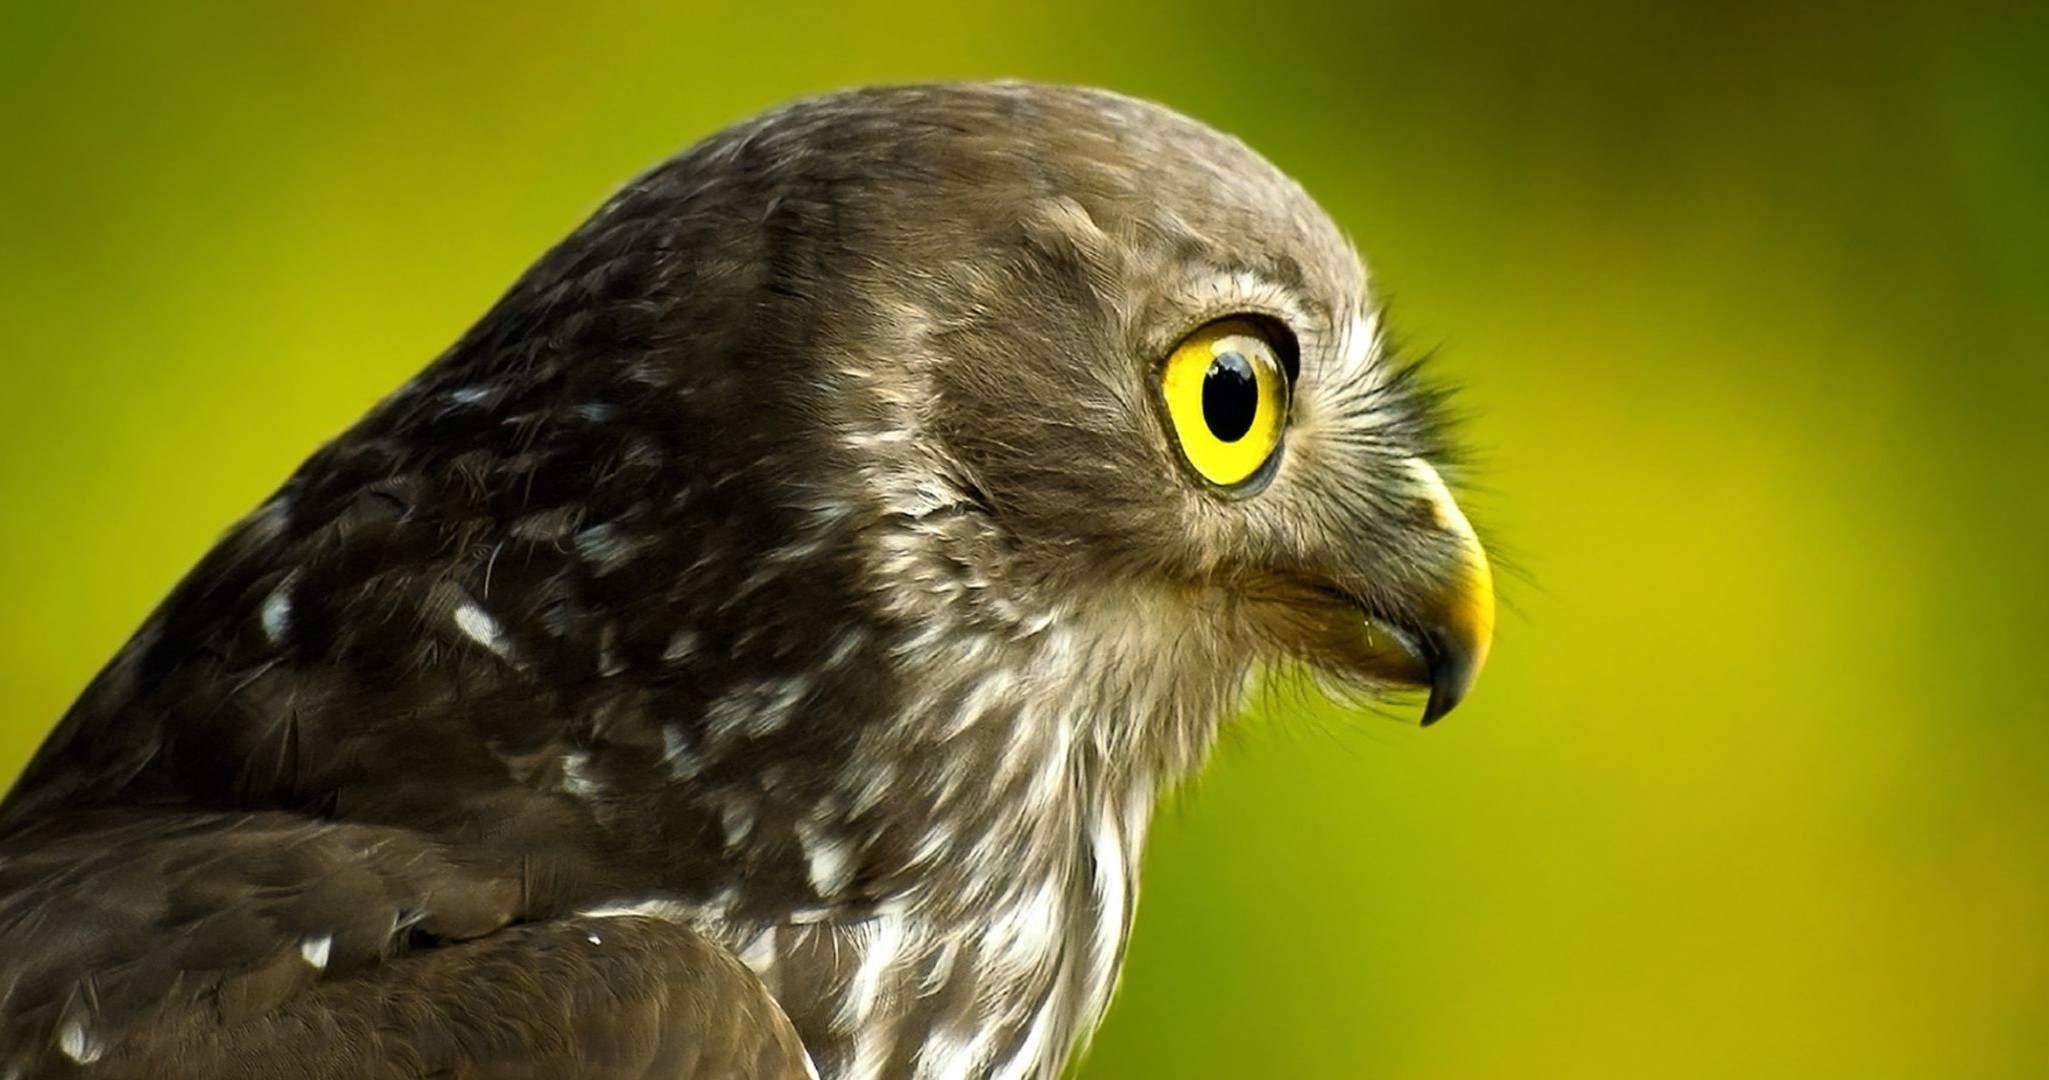 животные птица дикой природы раптор животное природа перо клюв портрет глаз добычей орел сова хок